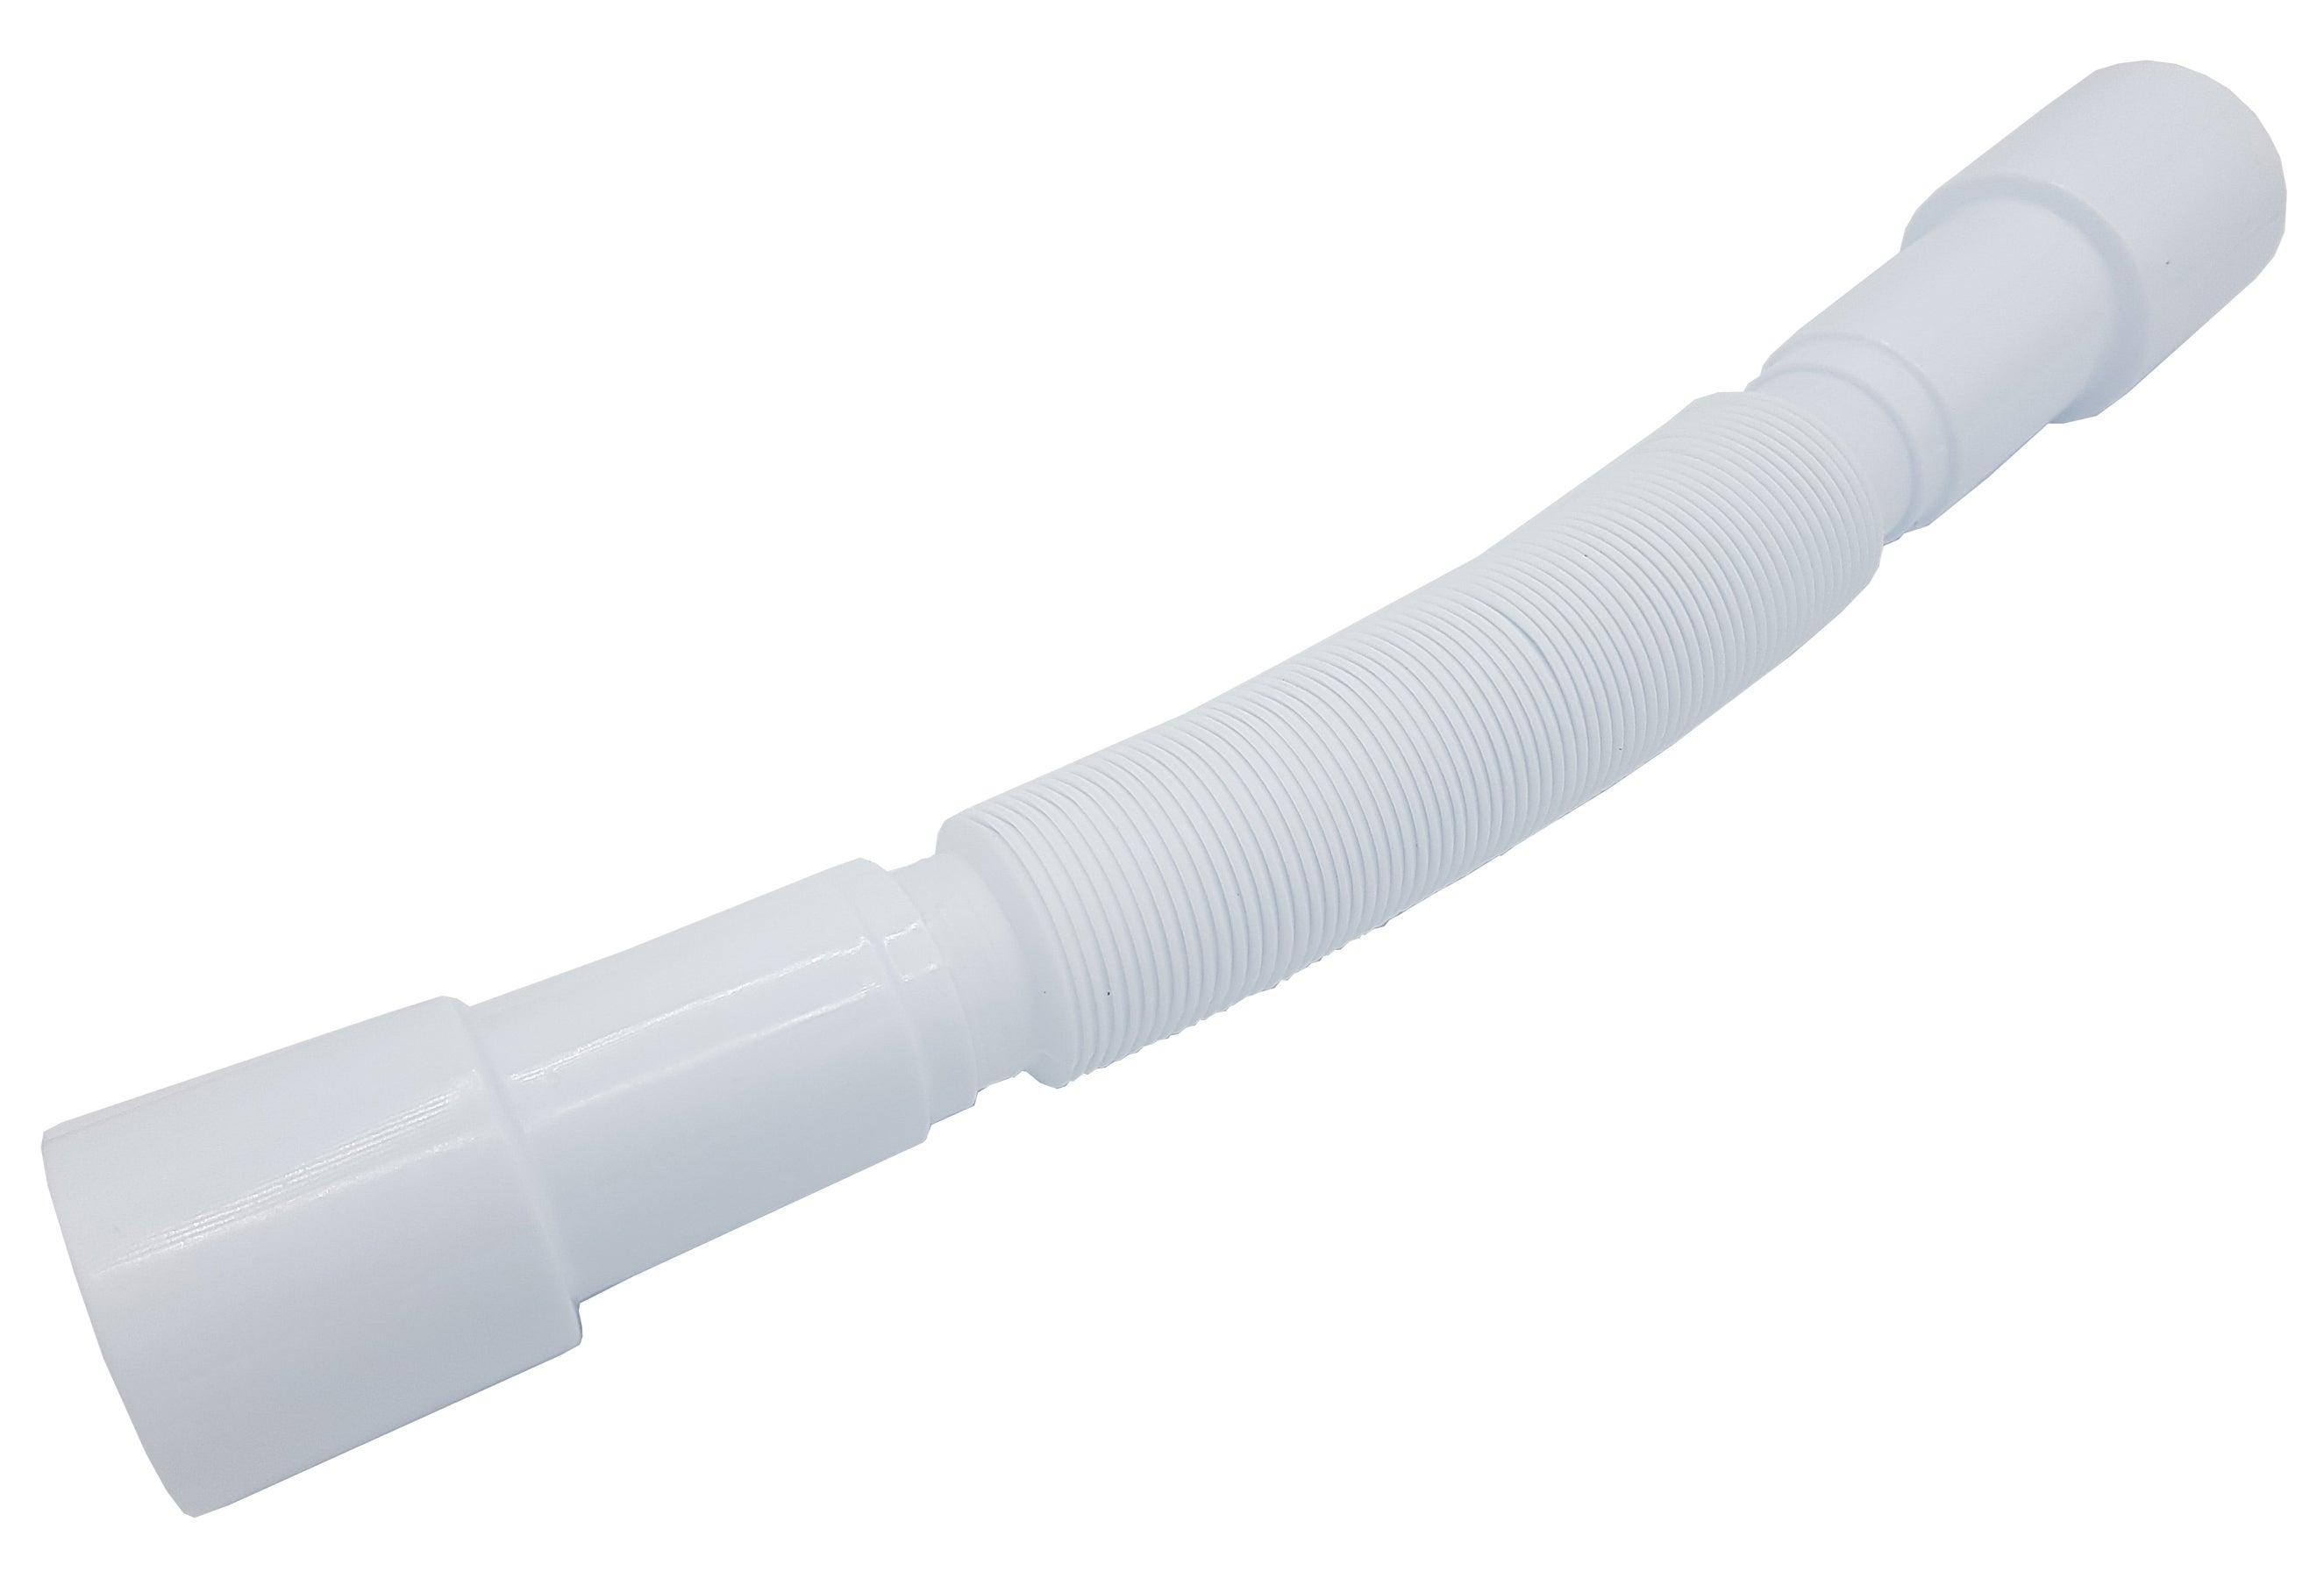 Tuyau Flexible Pvc Gris - sanitaire - materiel dinstallation sanitaire -  evacuation eaux sanitair - siphons et accessoires - tuyau flexible pvc gris